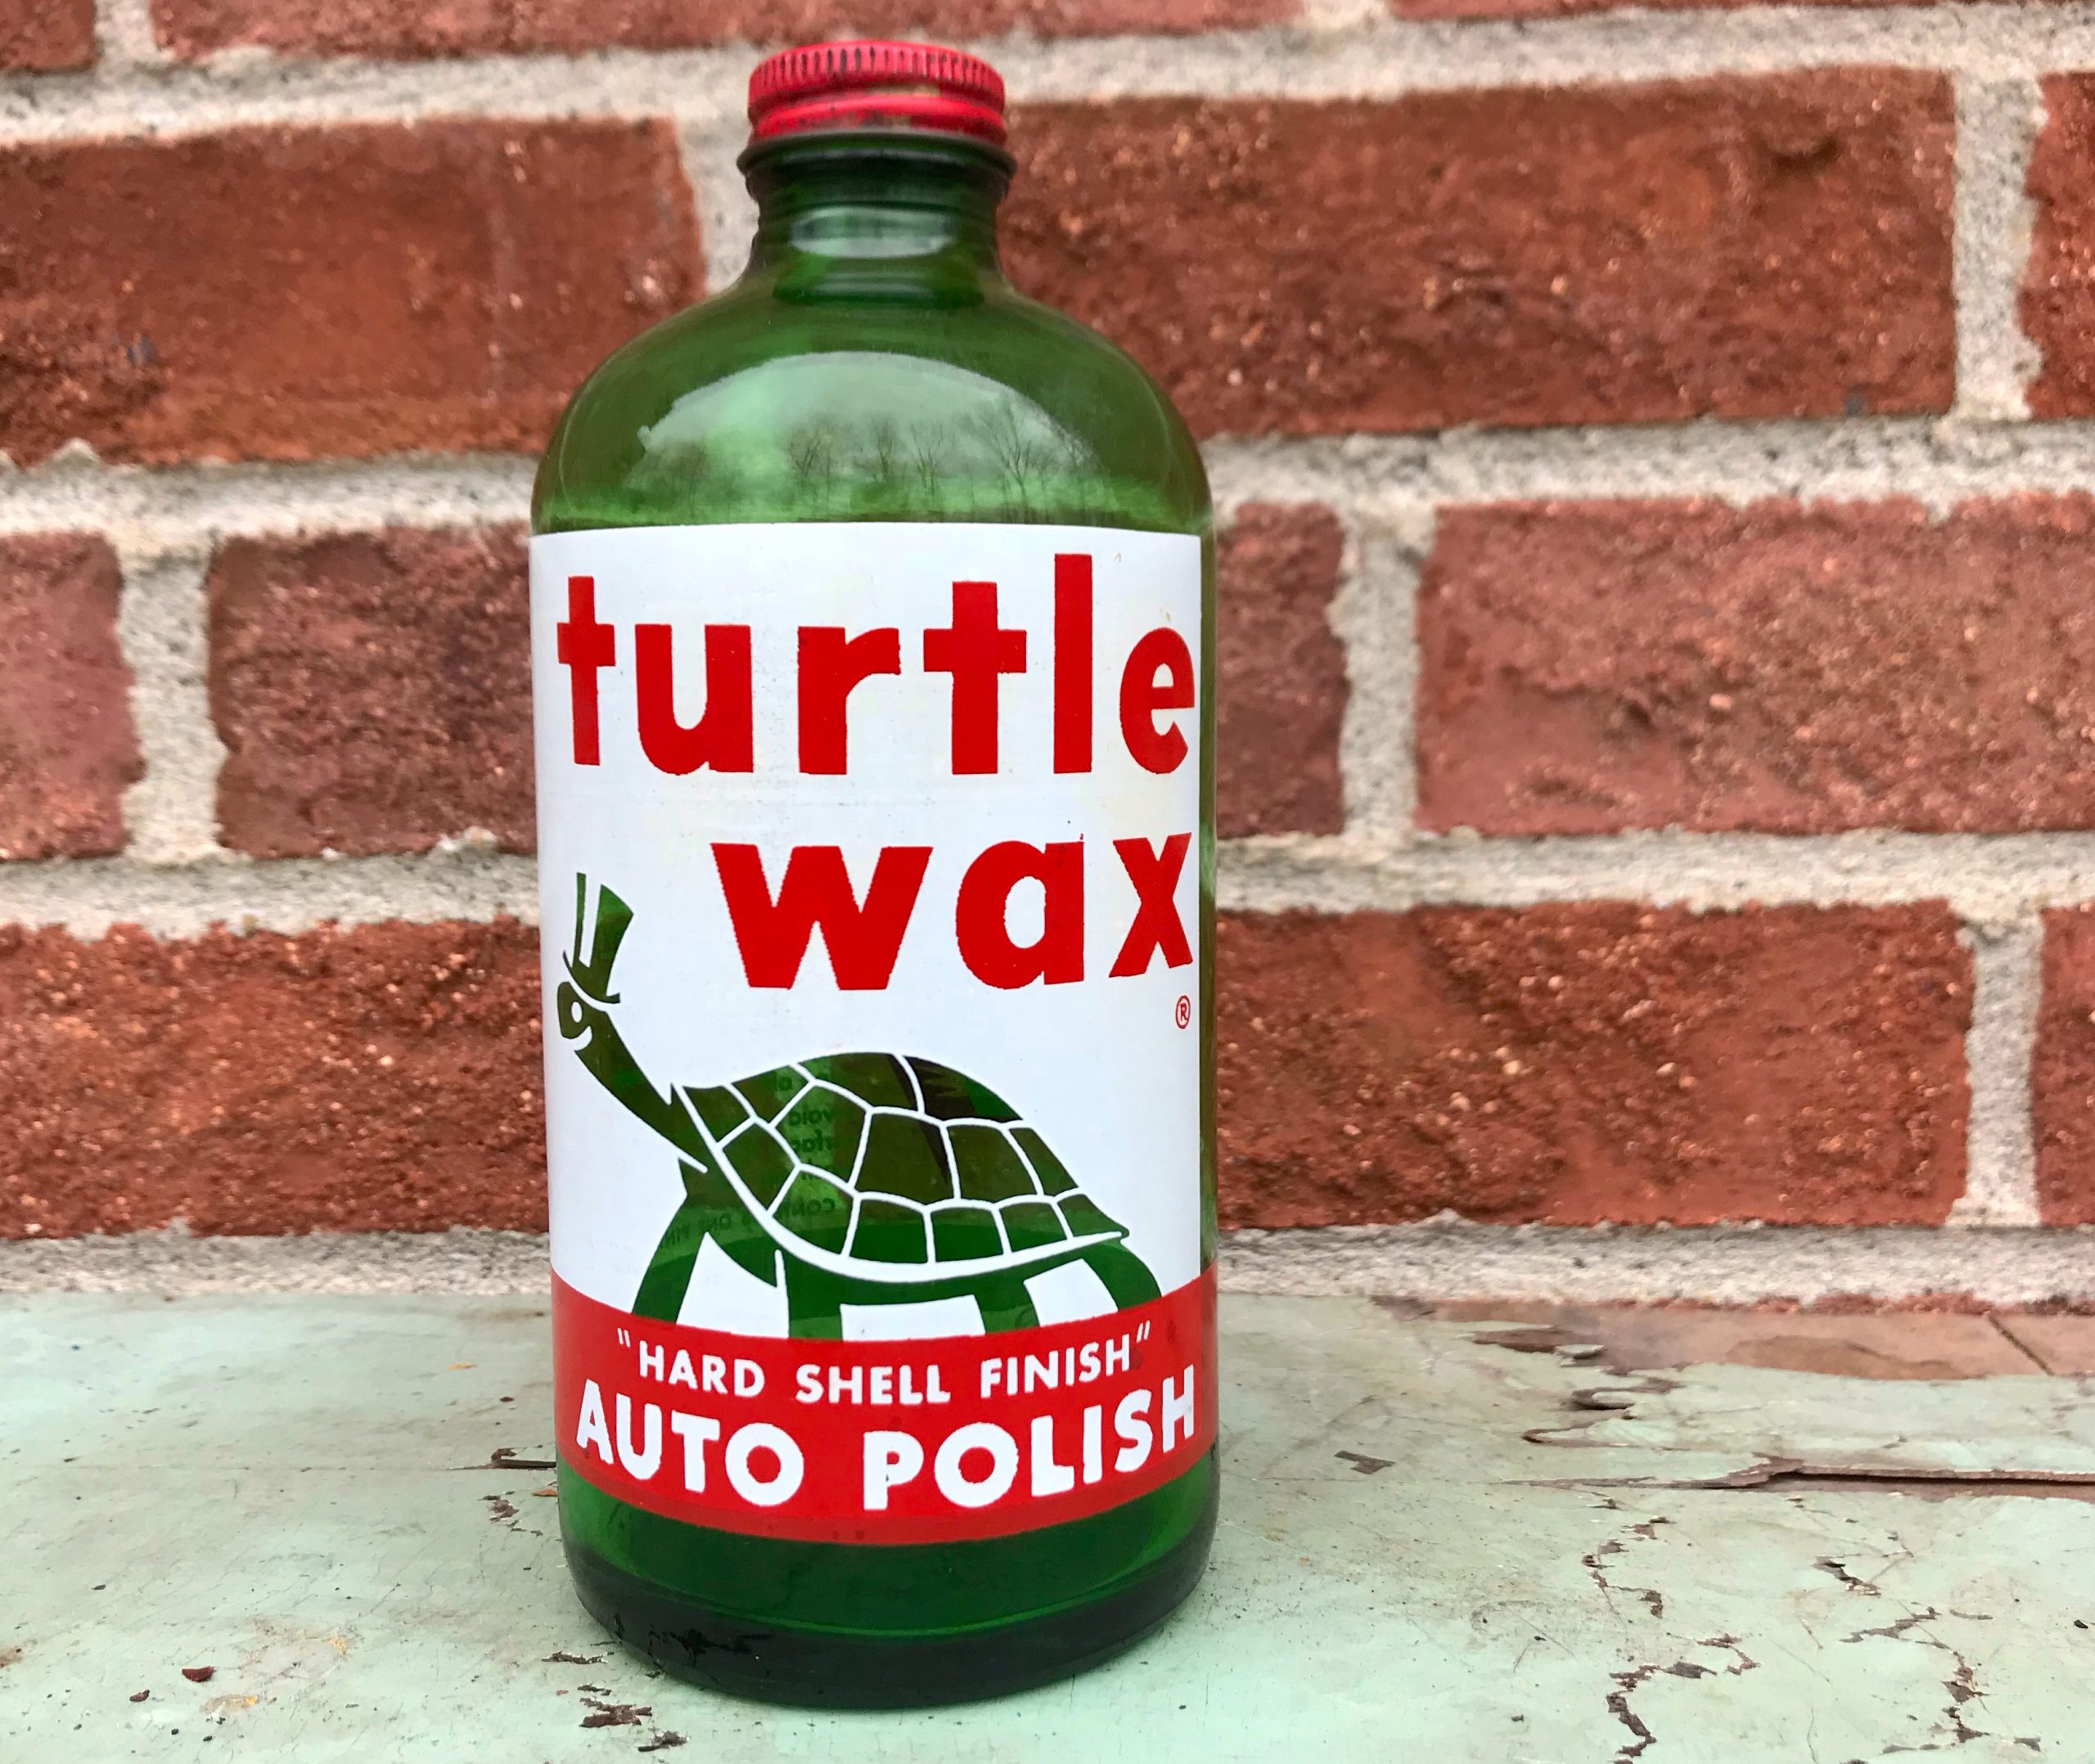 Turtle Wax, Inc., est. 1941